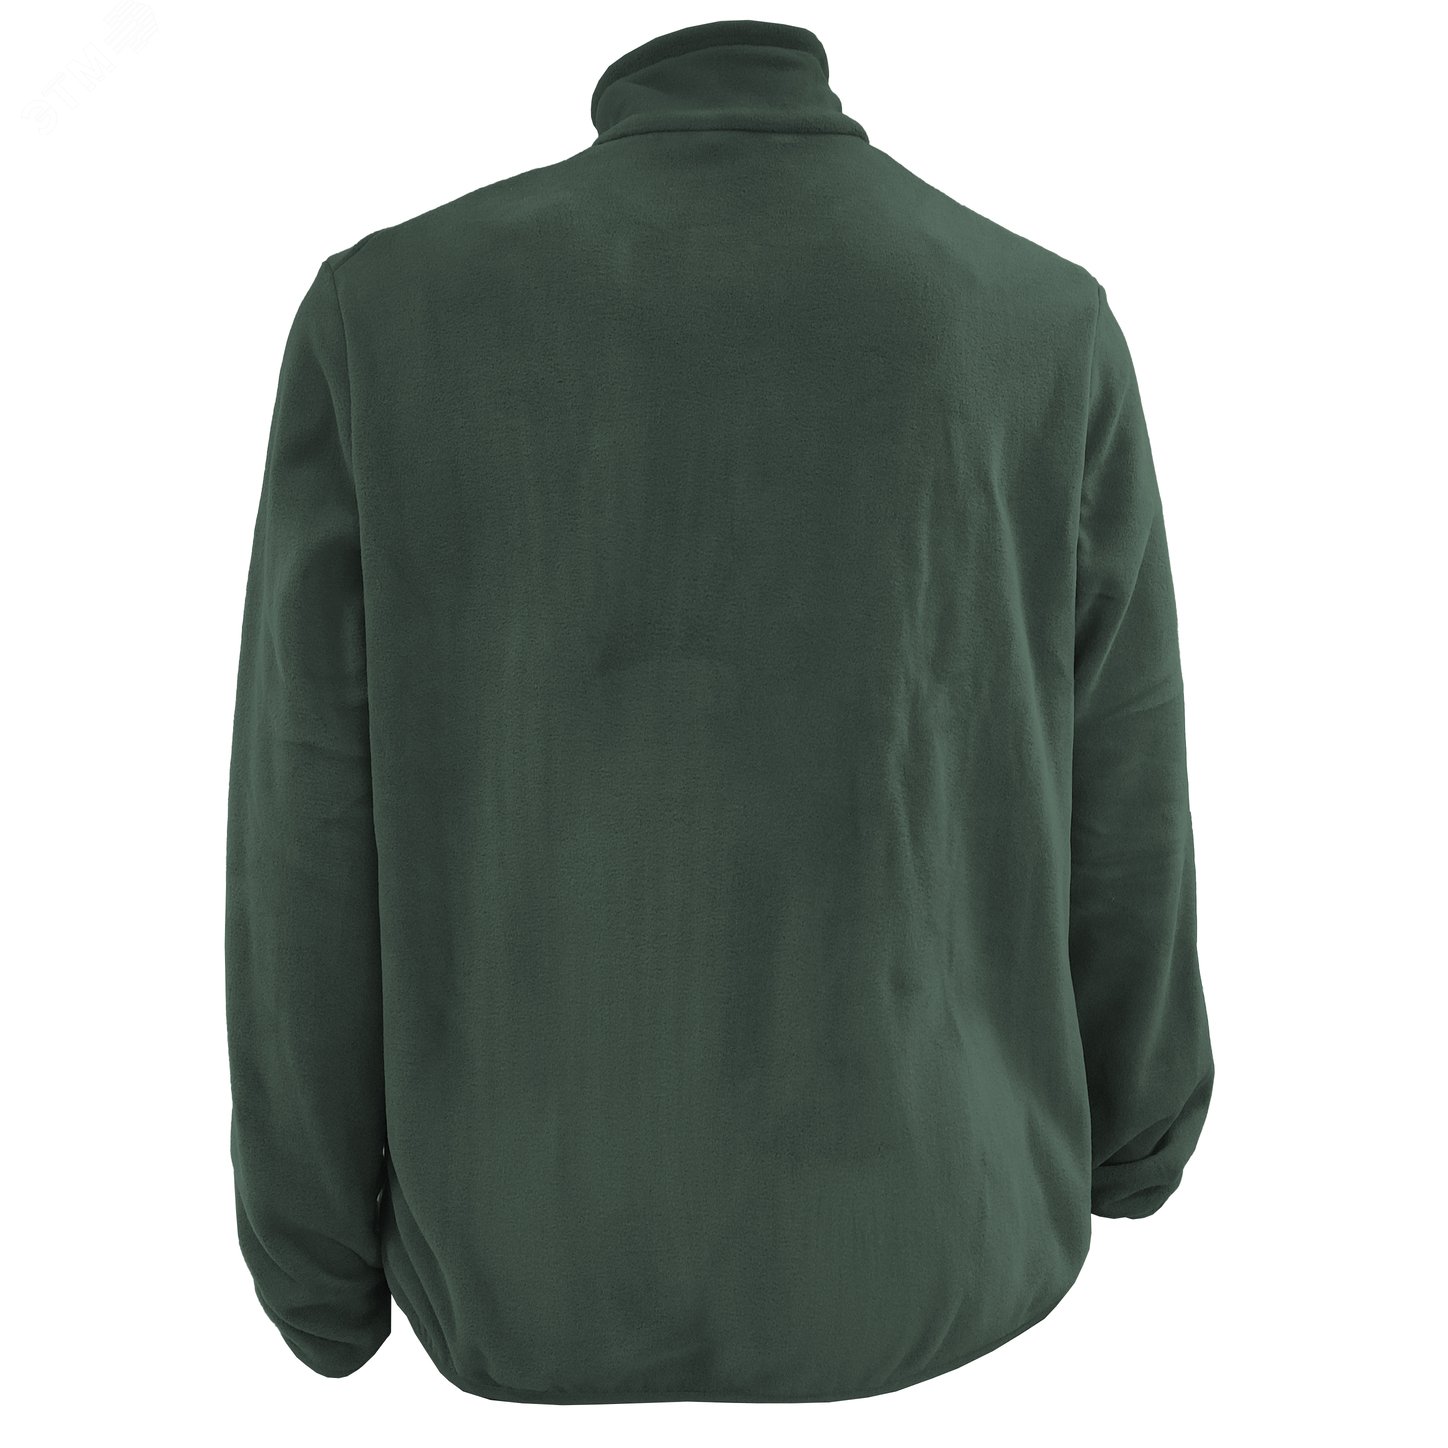 Куртка флисовая арт. JF-01 на молнии цв. хаки  44-46  р. S 142303 Эталон-Спецодежда - превью 5